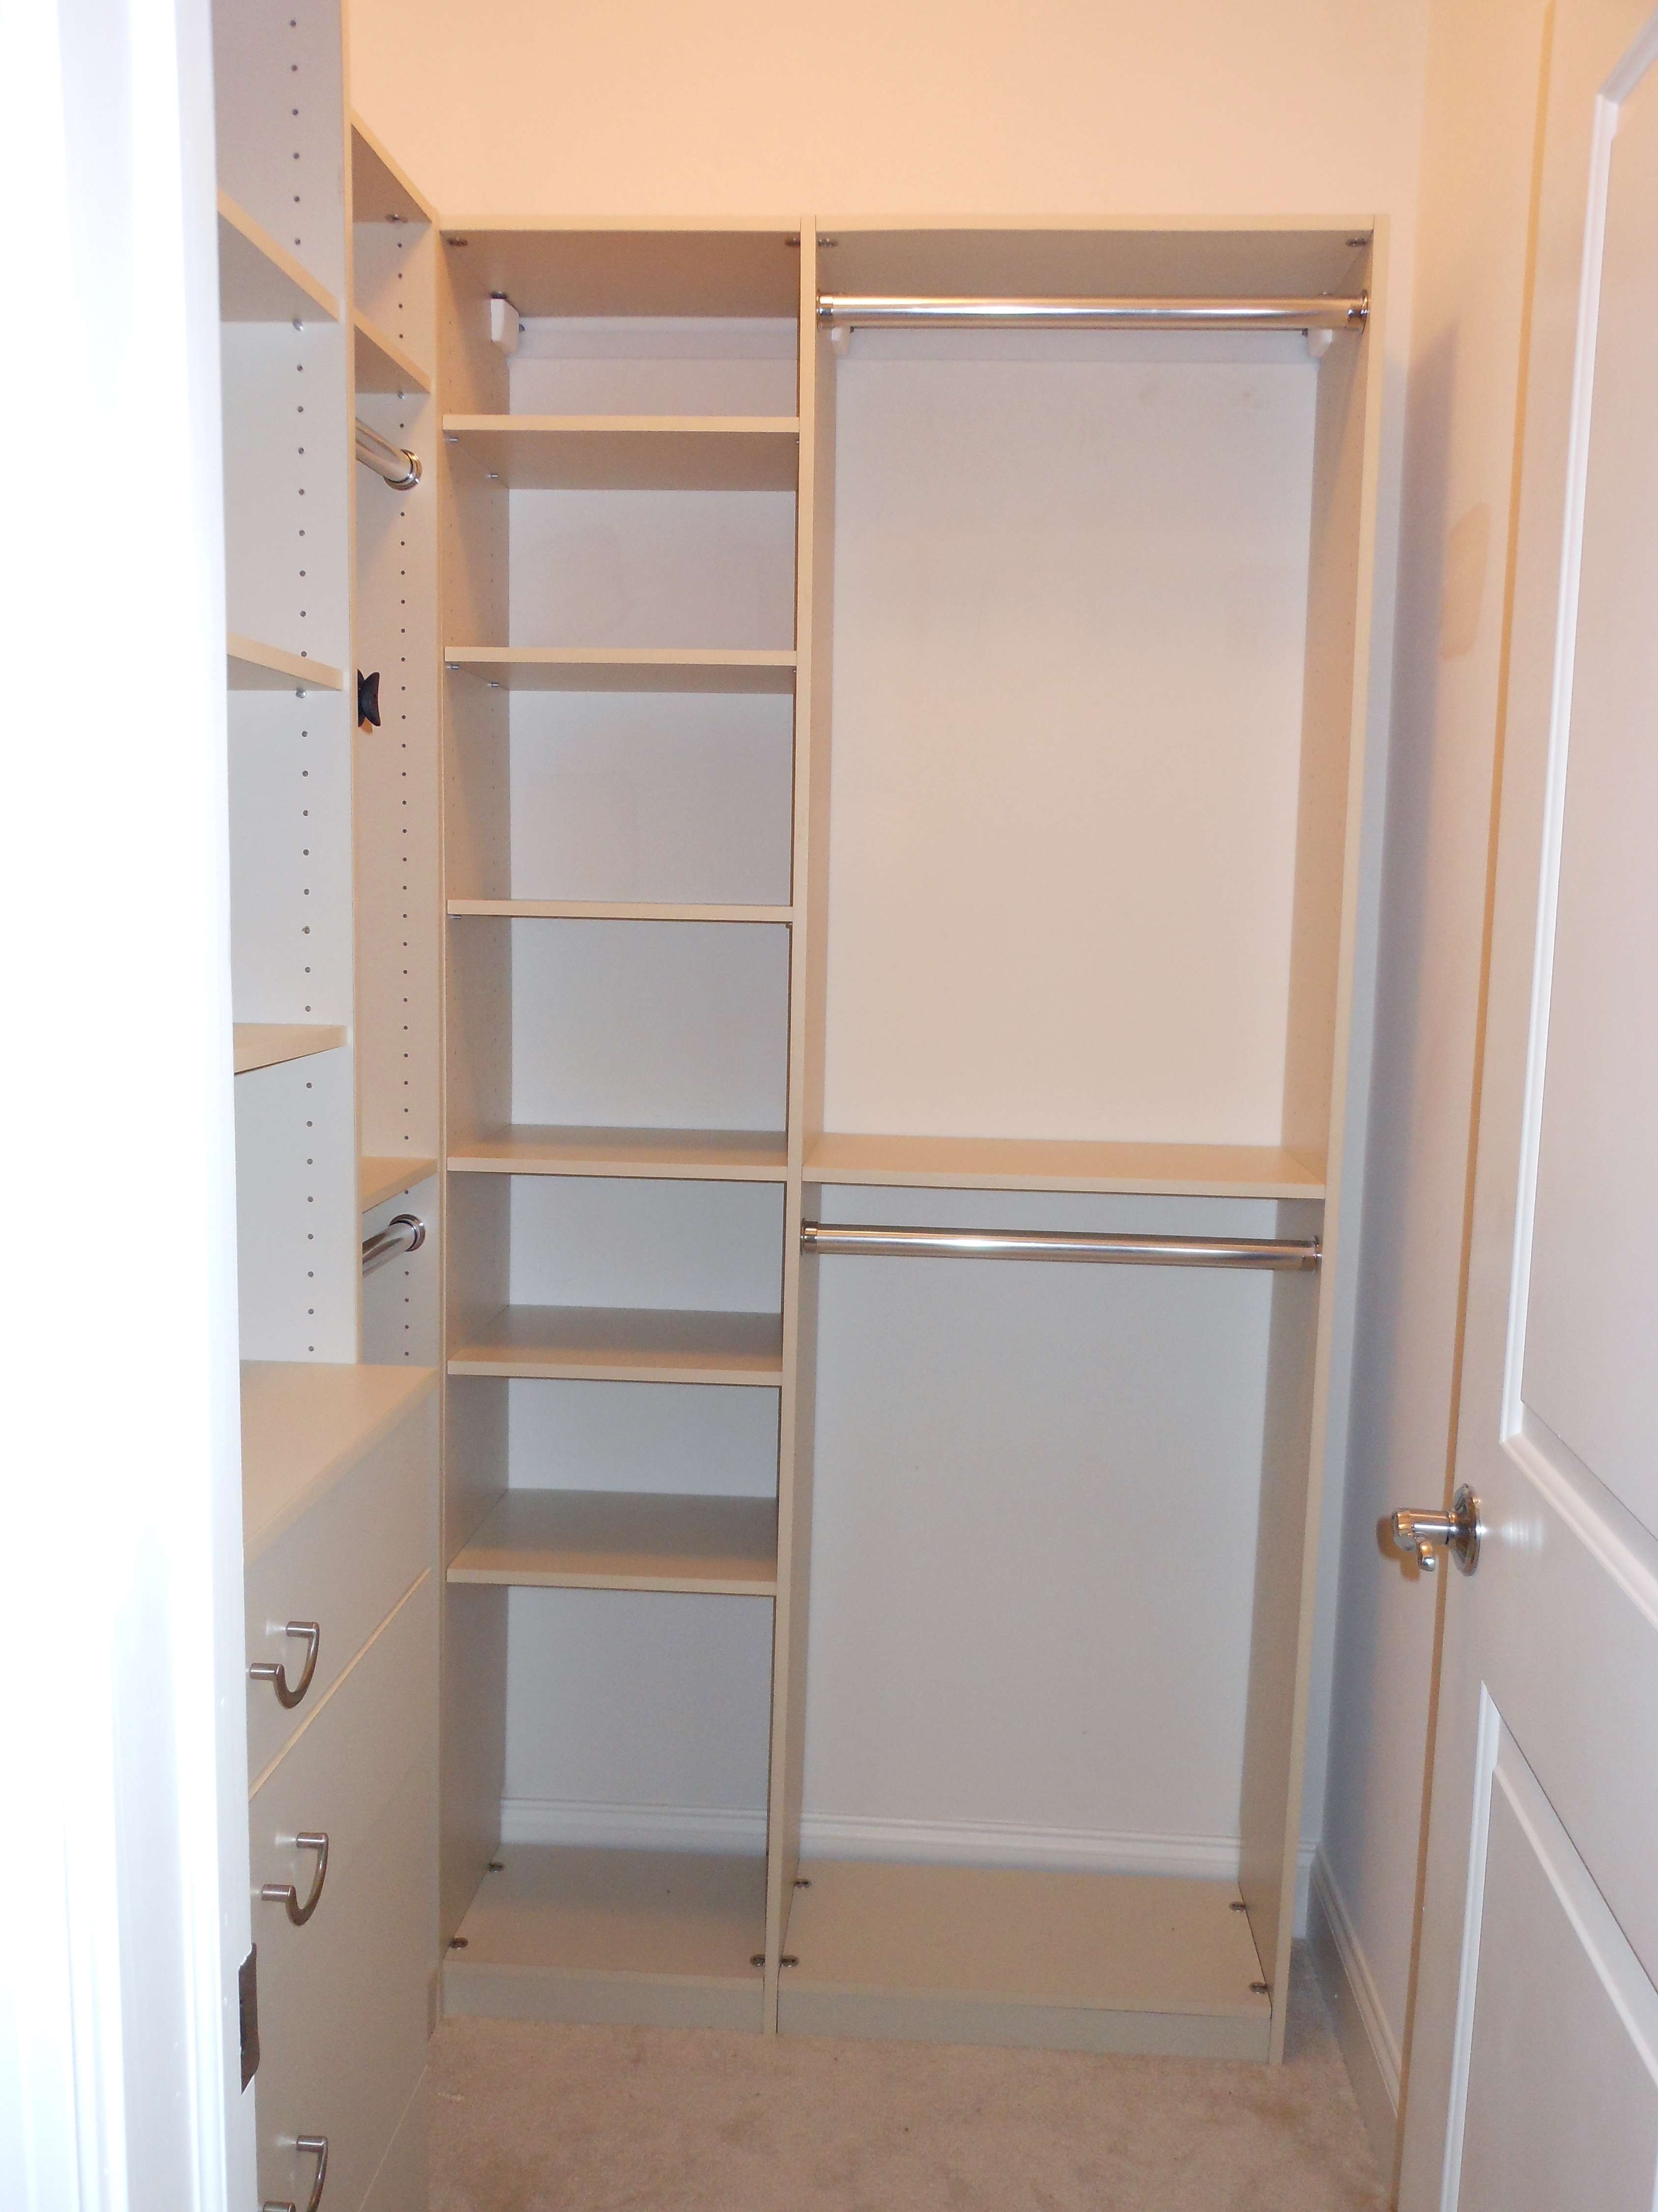 Idéias de organização de Closet Deep inspiração de organizar armário de papel de parede é segmento de soluções de Closet Deep Narrow 